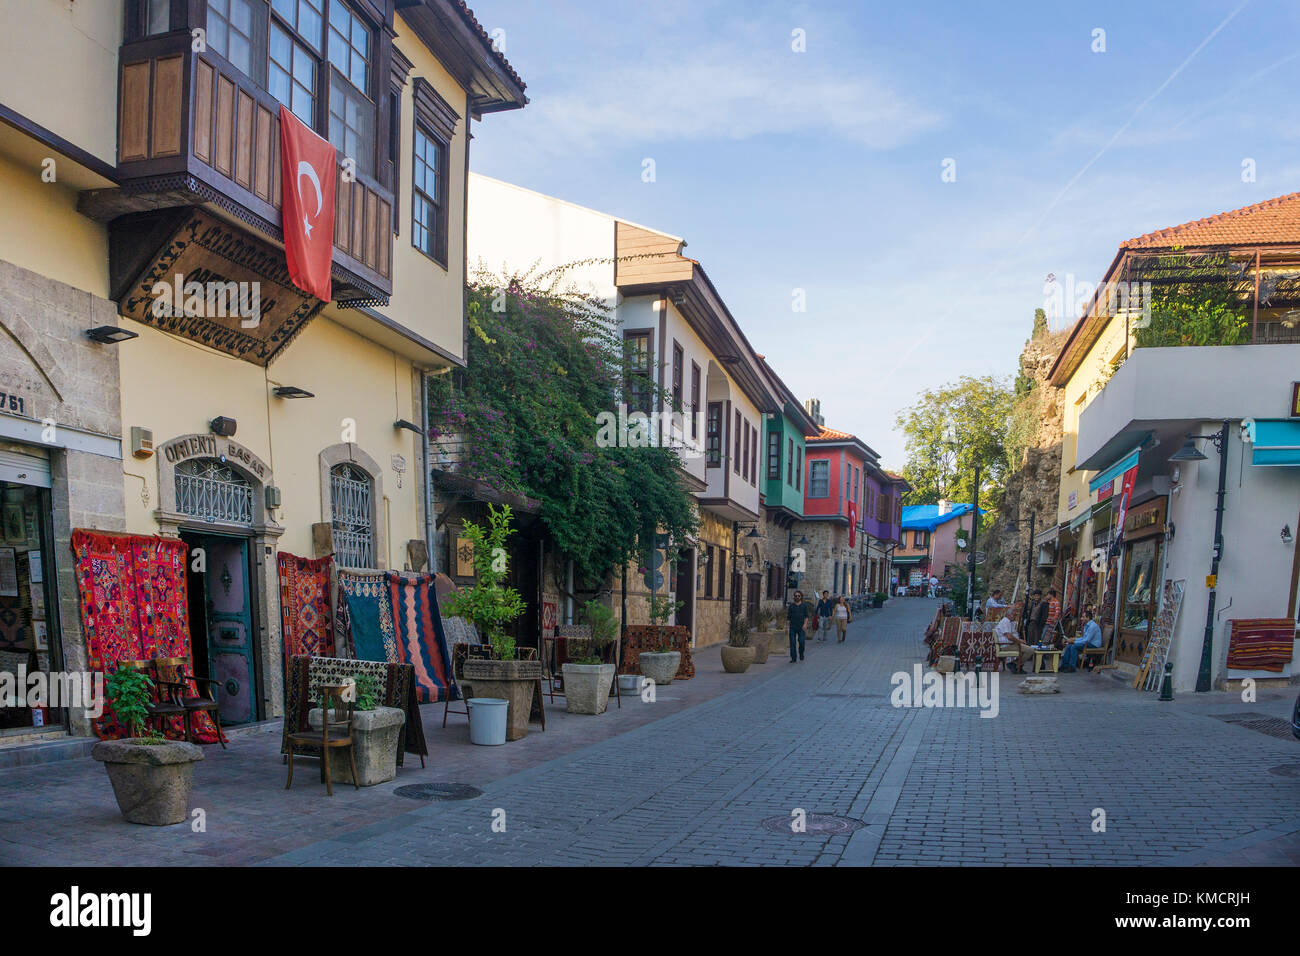 Bazaar, negozi di souvenir in un vicolo della città vecchia di Kaleici, Antalya, riviera turca, Turchia Foto Stock